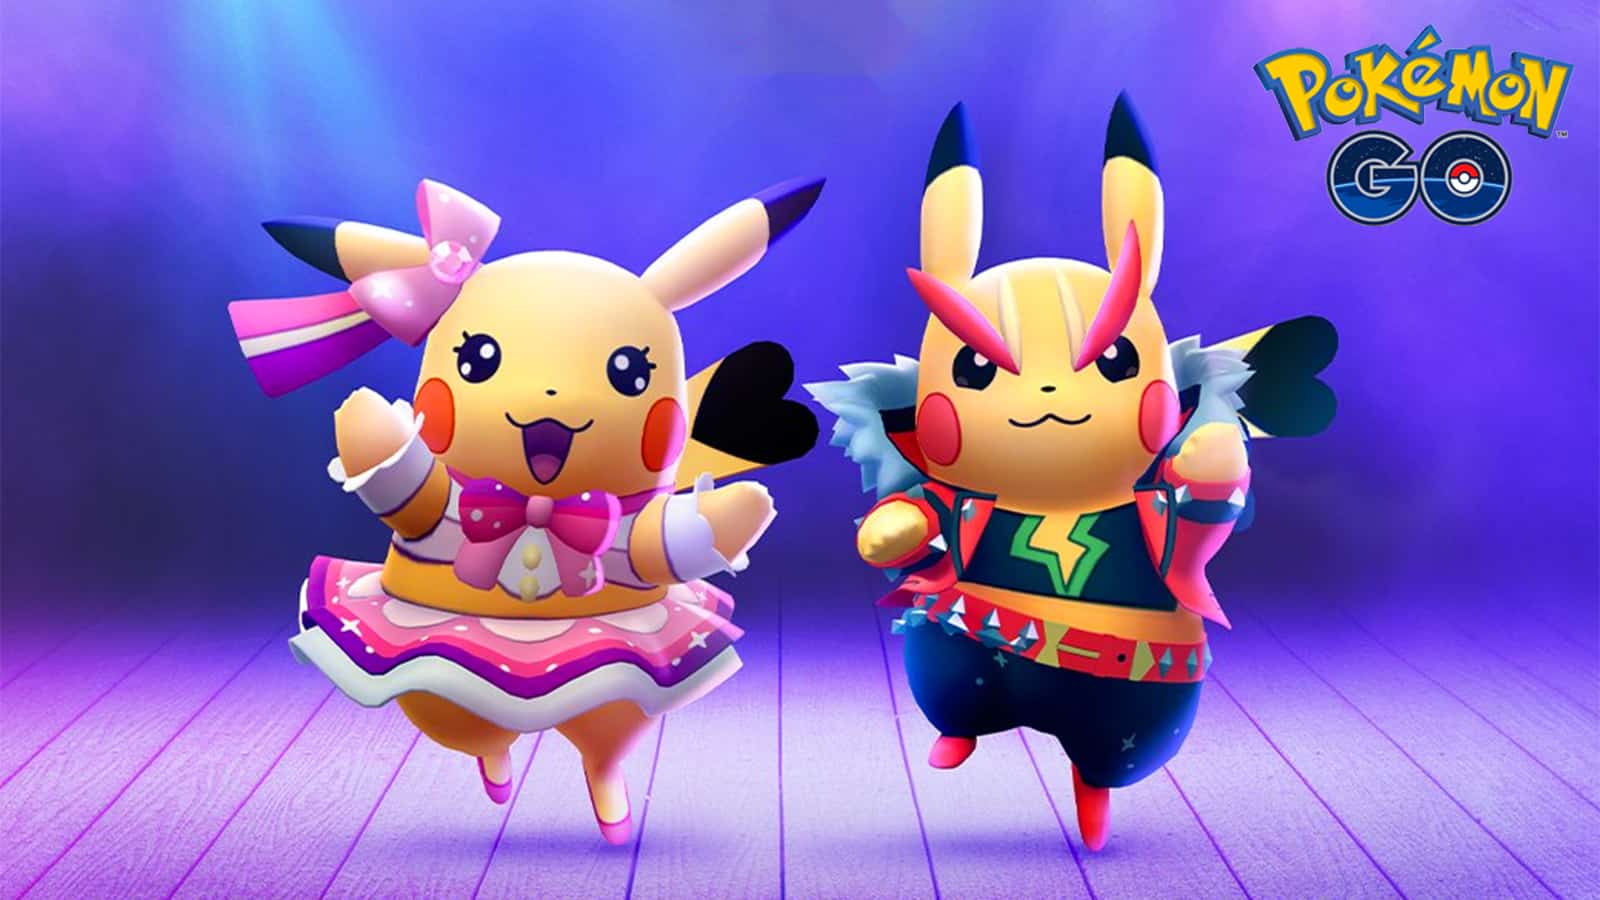 Pikachu Pop Star and Pikachu Rock Star